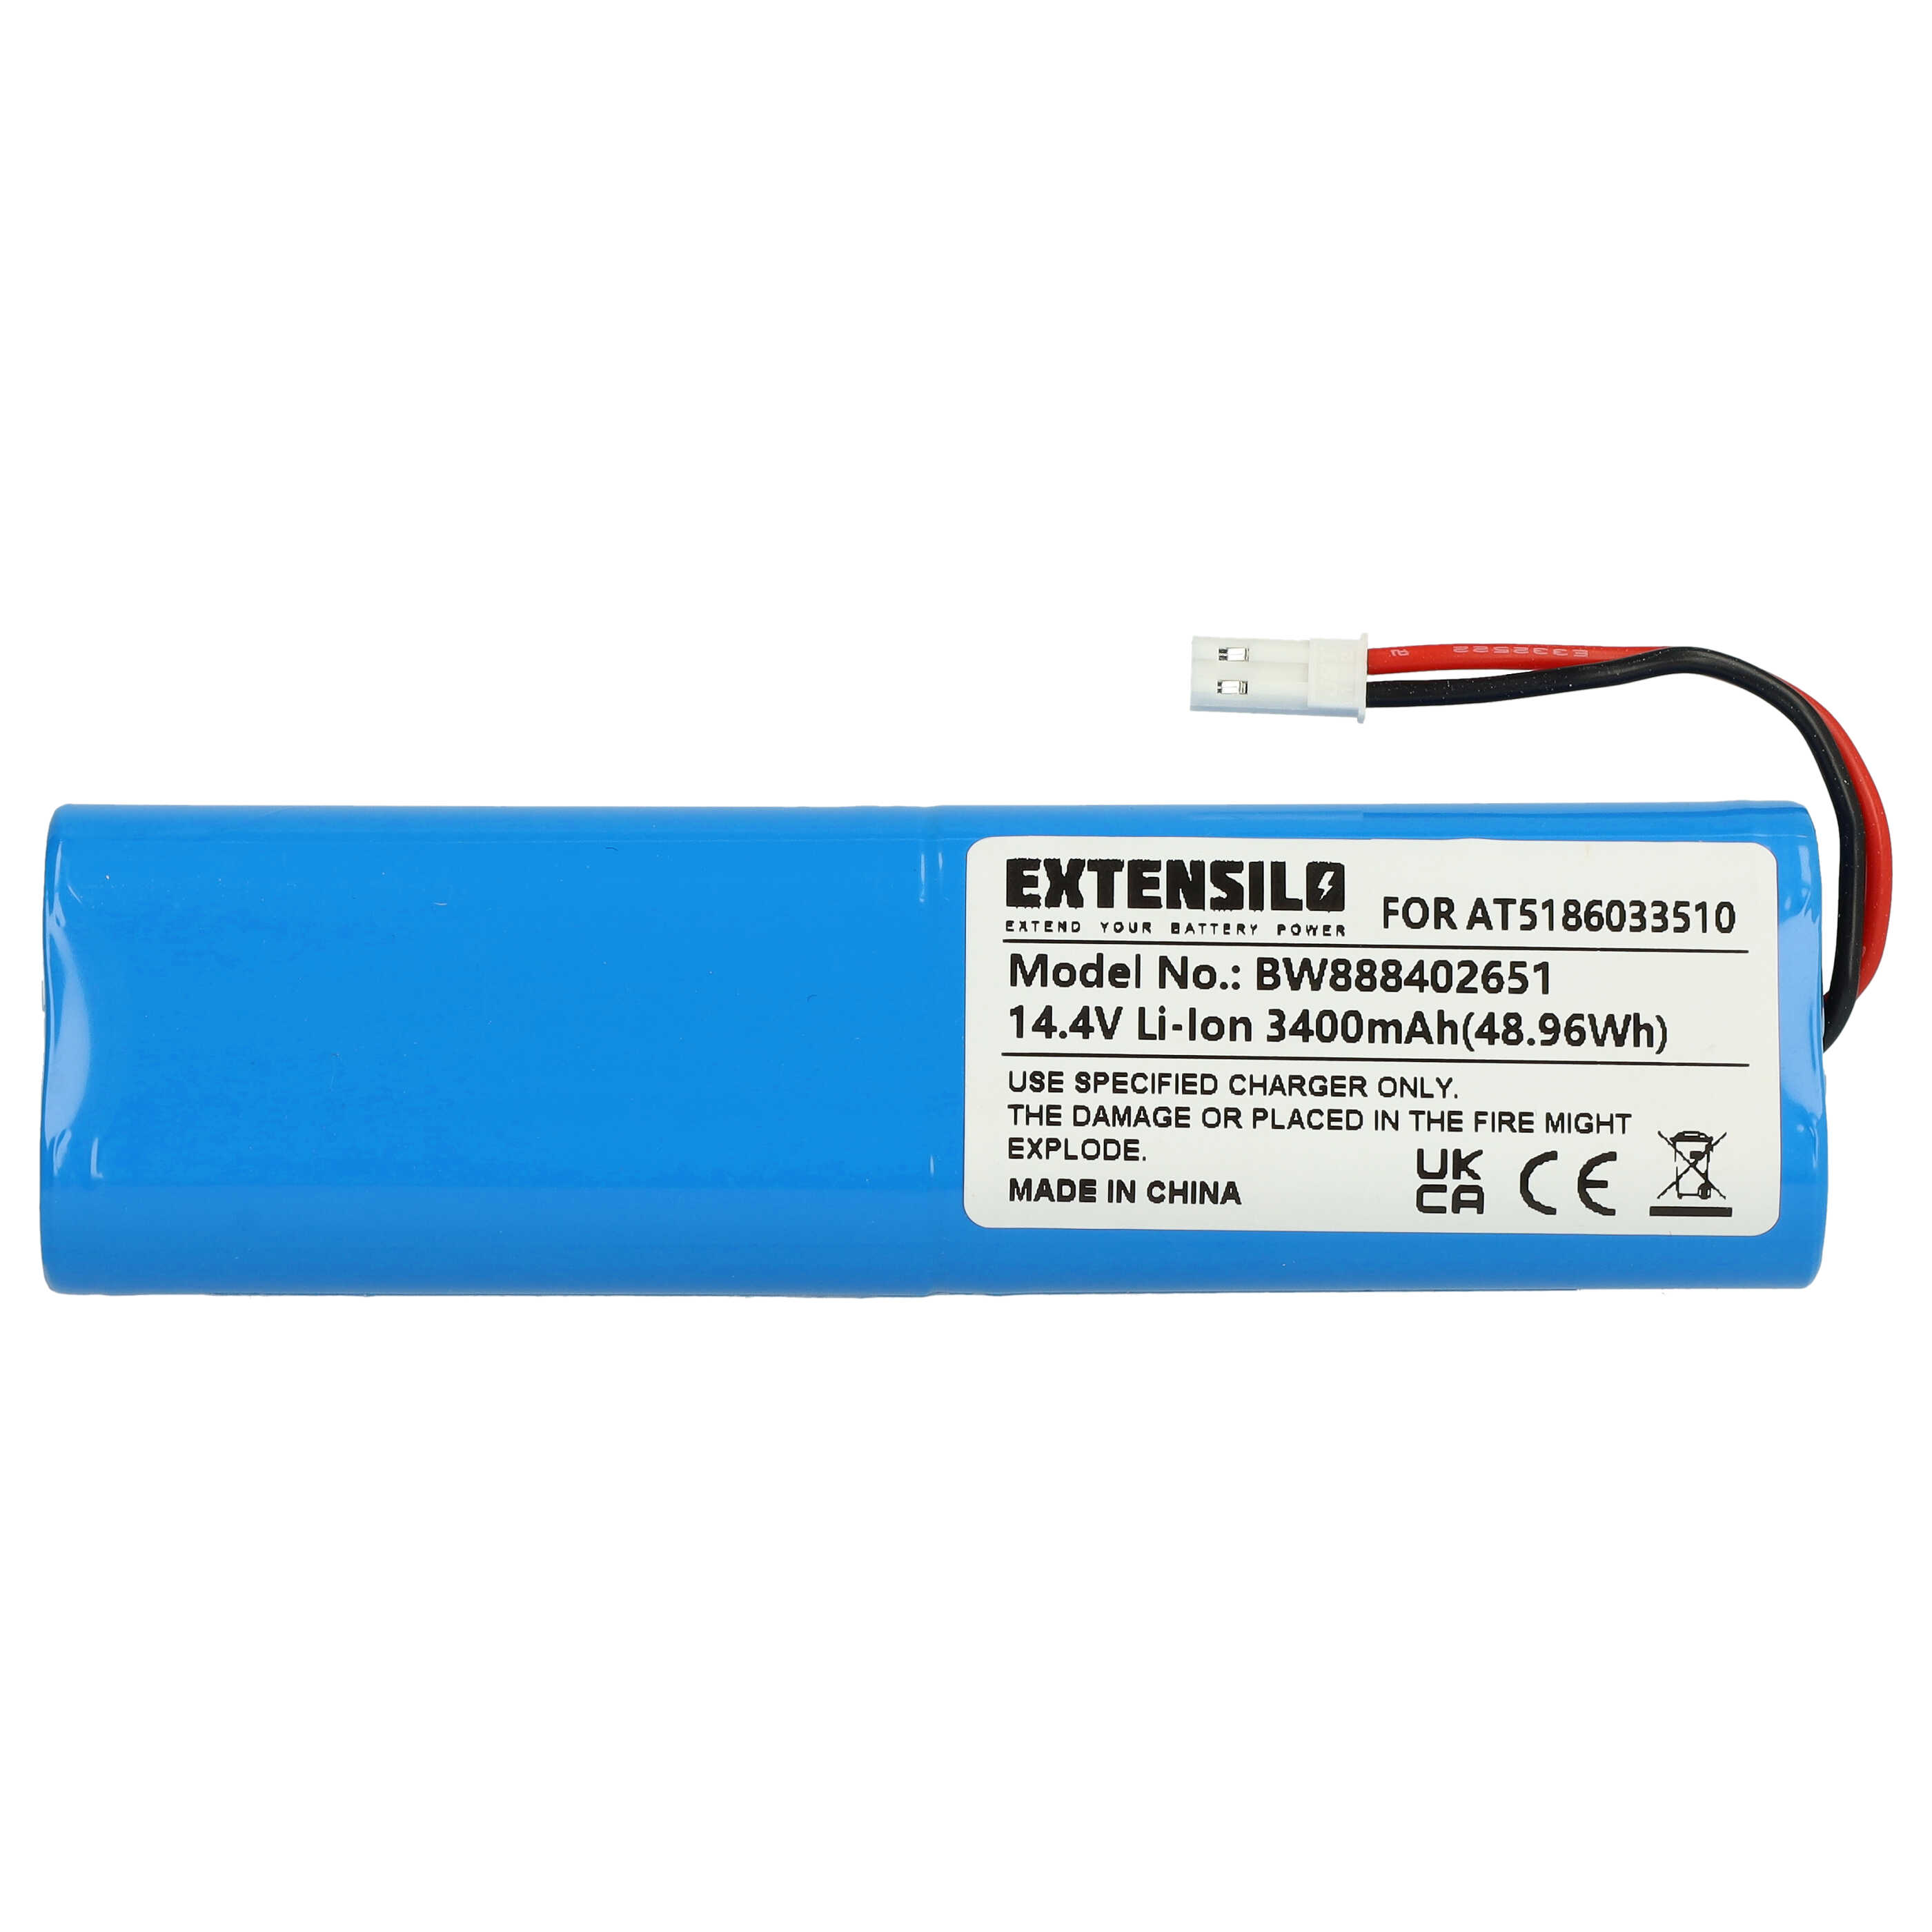 Batterie remplace Ariete AT5186033510 pour robot aspirateur - 3400mAh 14,4V Li-ion